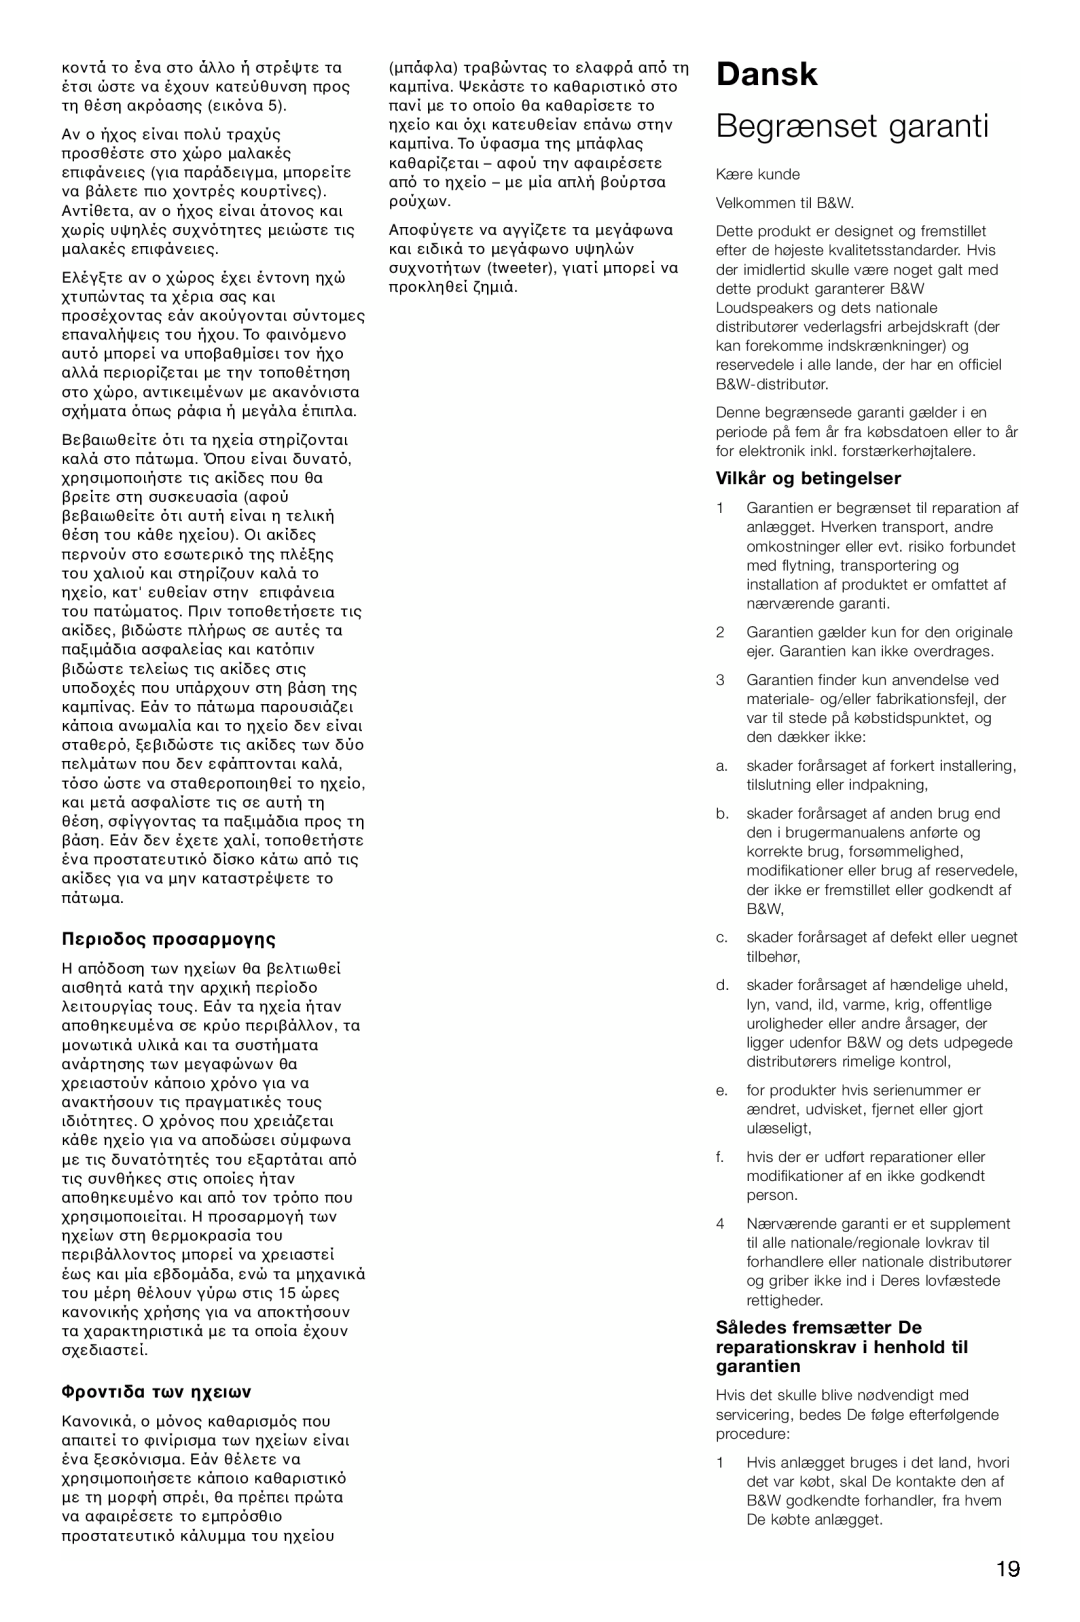 Bowers & Wilkins CM6, CM4 owner manual Dansk, Begrænset garanti, Περιπρ, Φρτων η, Vilkår og betingelser 